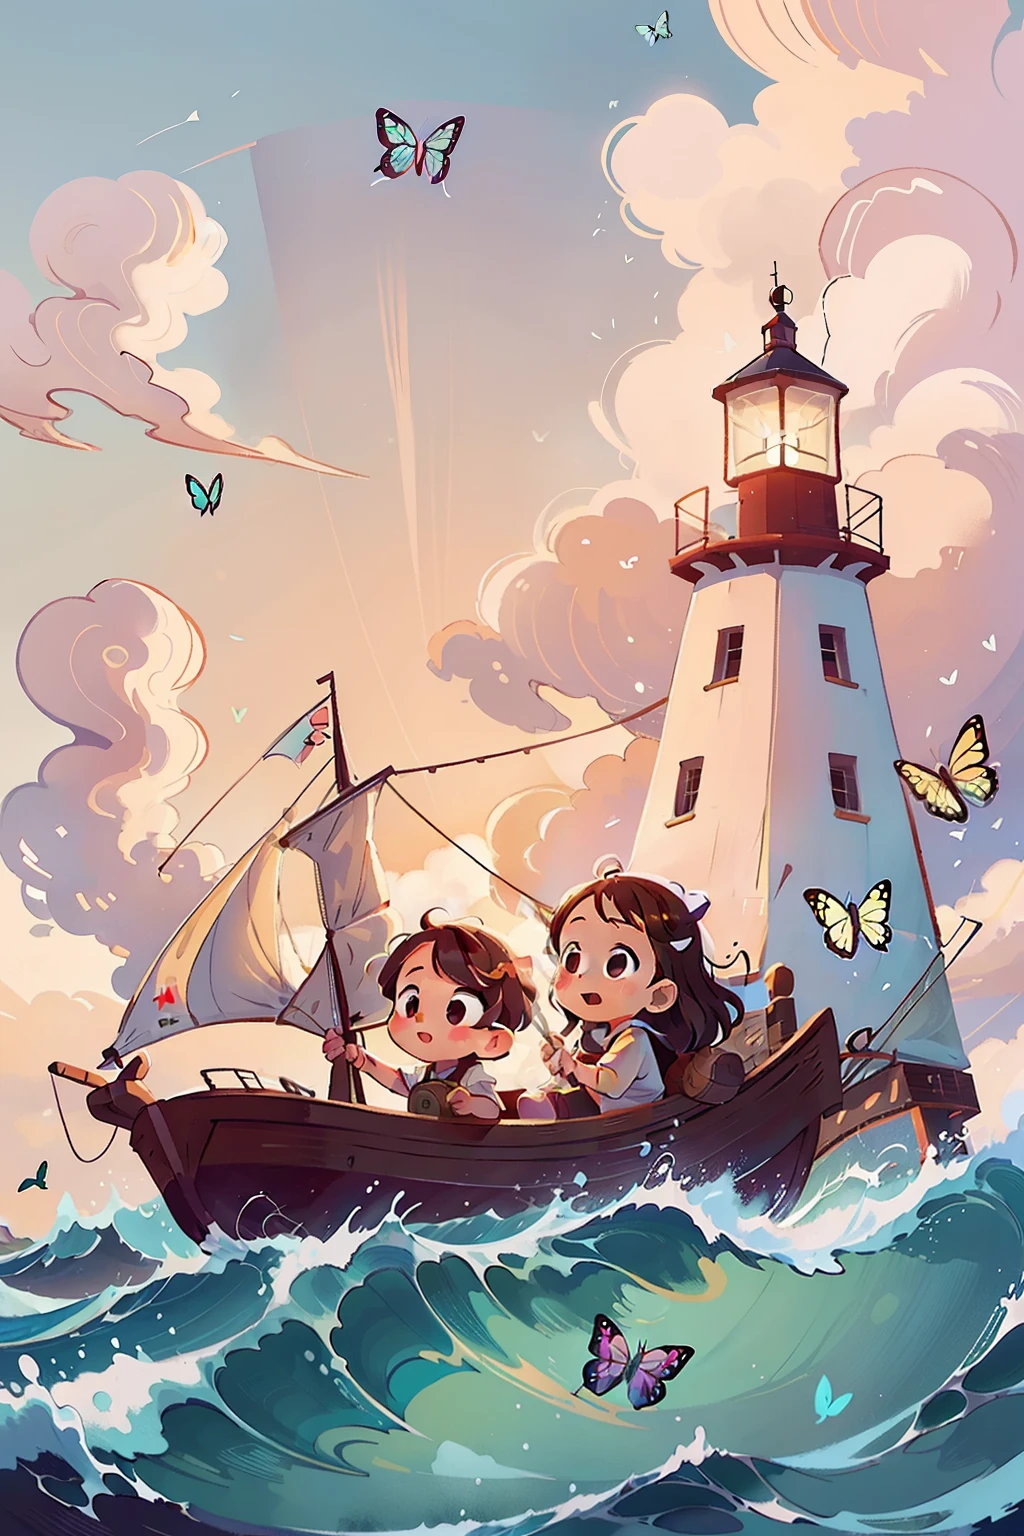 Gera uma imagem de duas meninas muito jovens navegando em um barco, Ondas, mar, céu com nuvens brancas. borboletas coloridas, farol ao fundo,